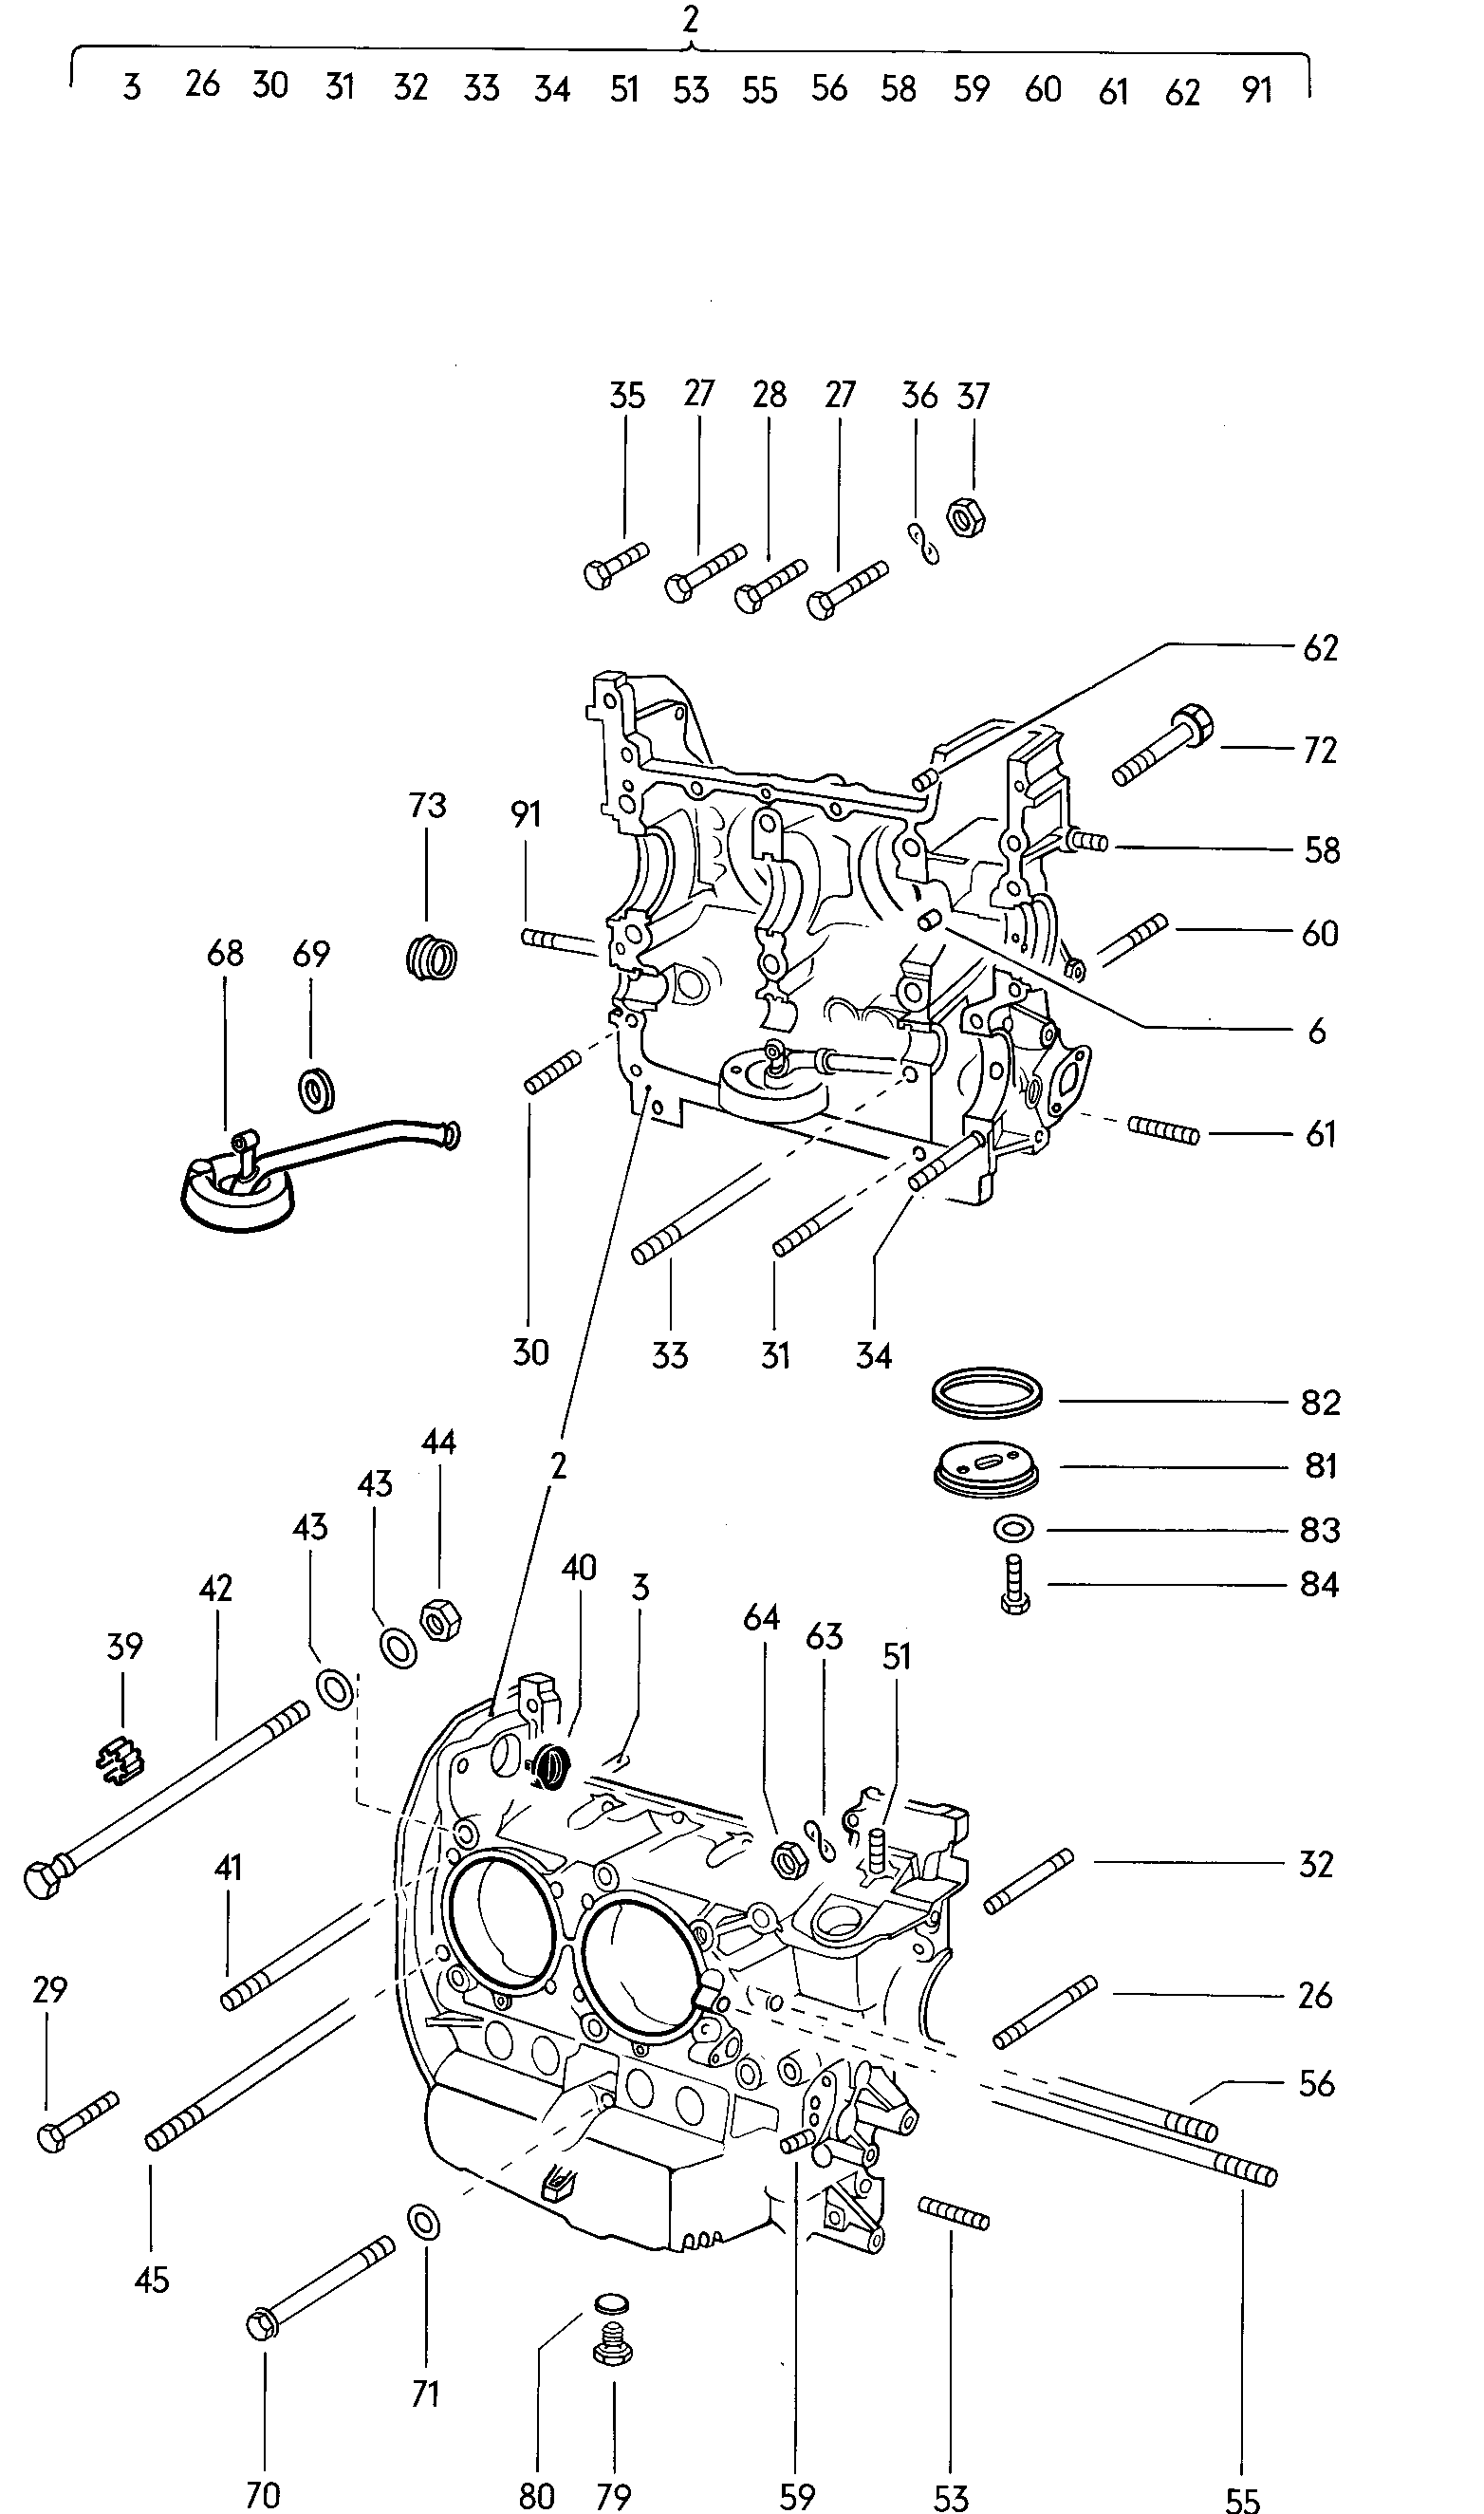 parti fissaggio per motore e
cambio - Typ 2/syncro(T2)  